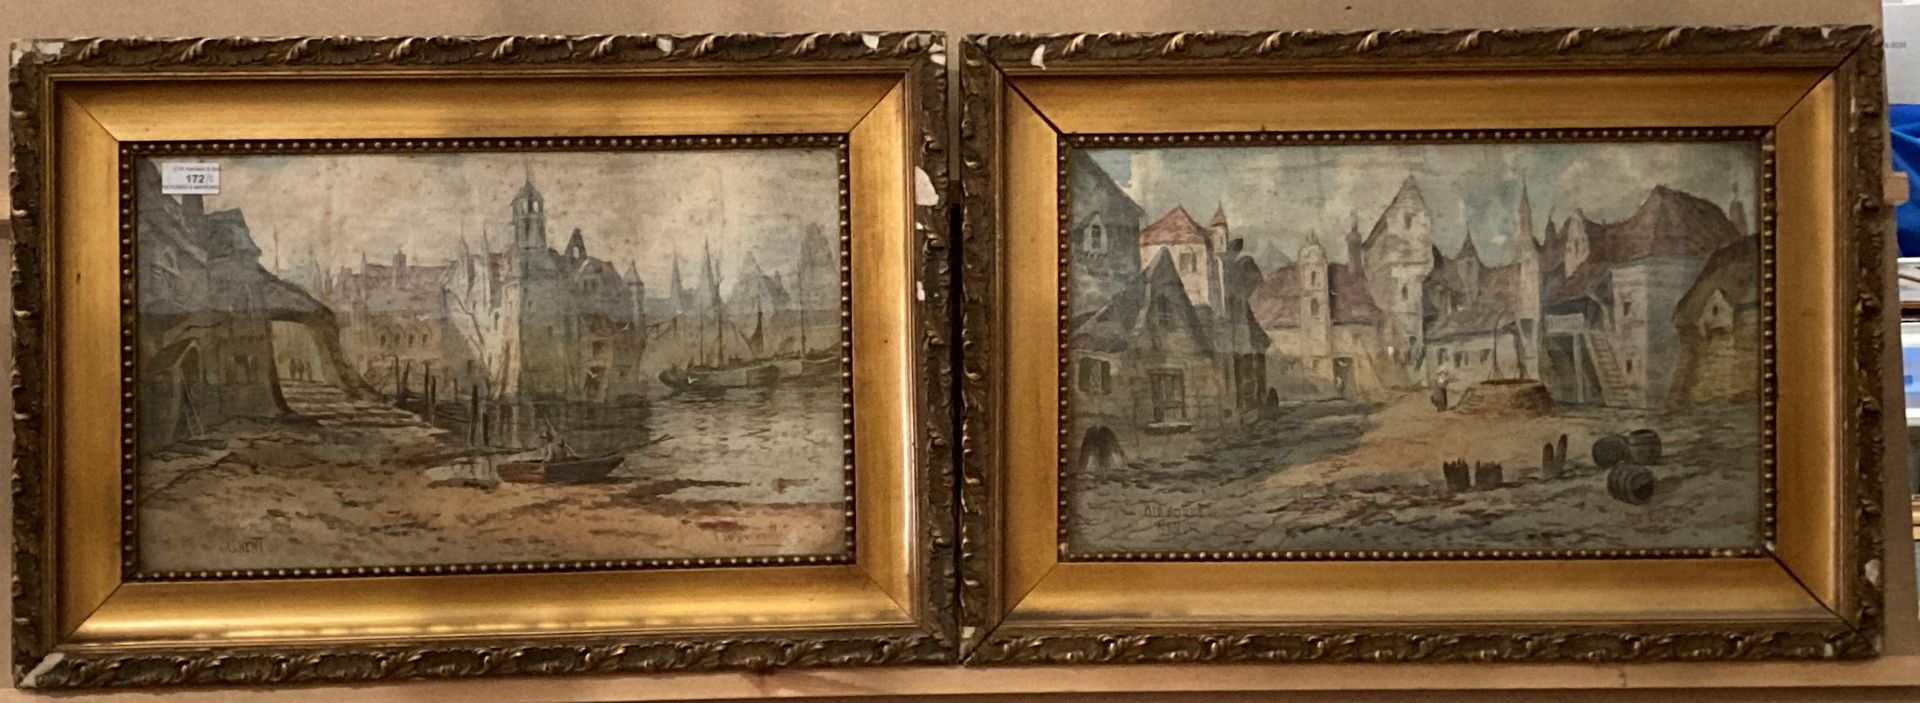 J de Burstville, 'Old Court, Namur' and 'Ghent', a pair of ornate gilt framed watercolours,